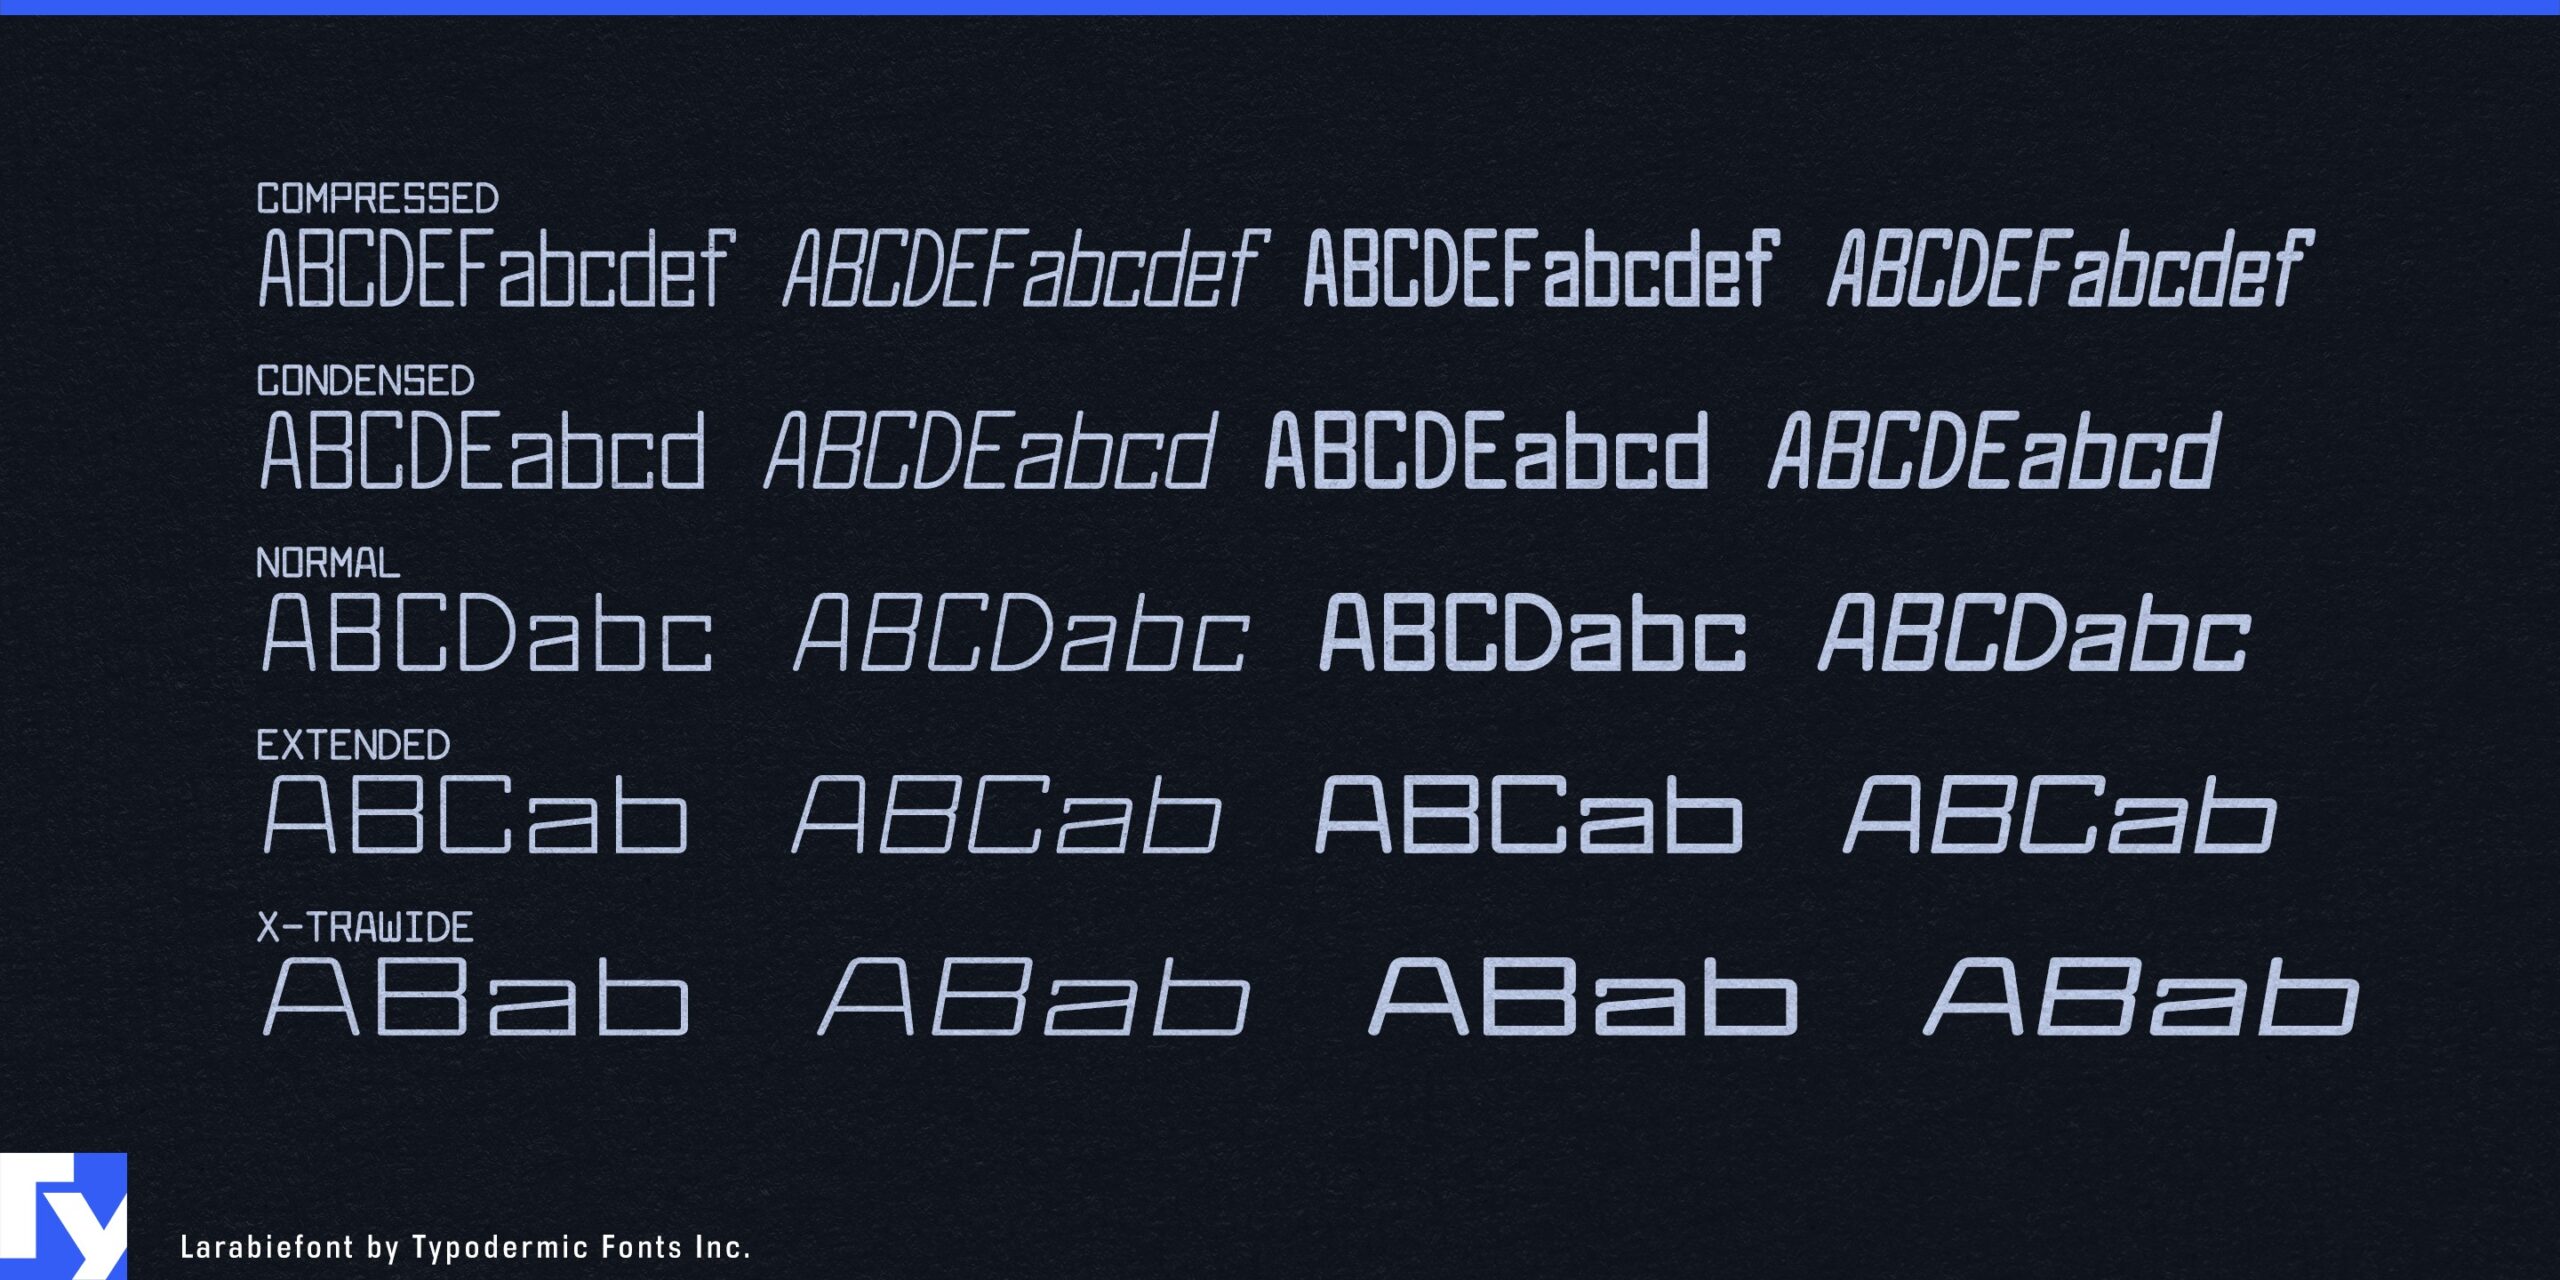 Streamlined Sophistication: Larabiefont Font Elevates Technical Designs